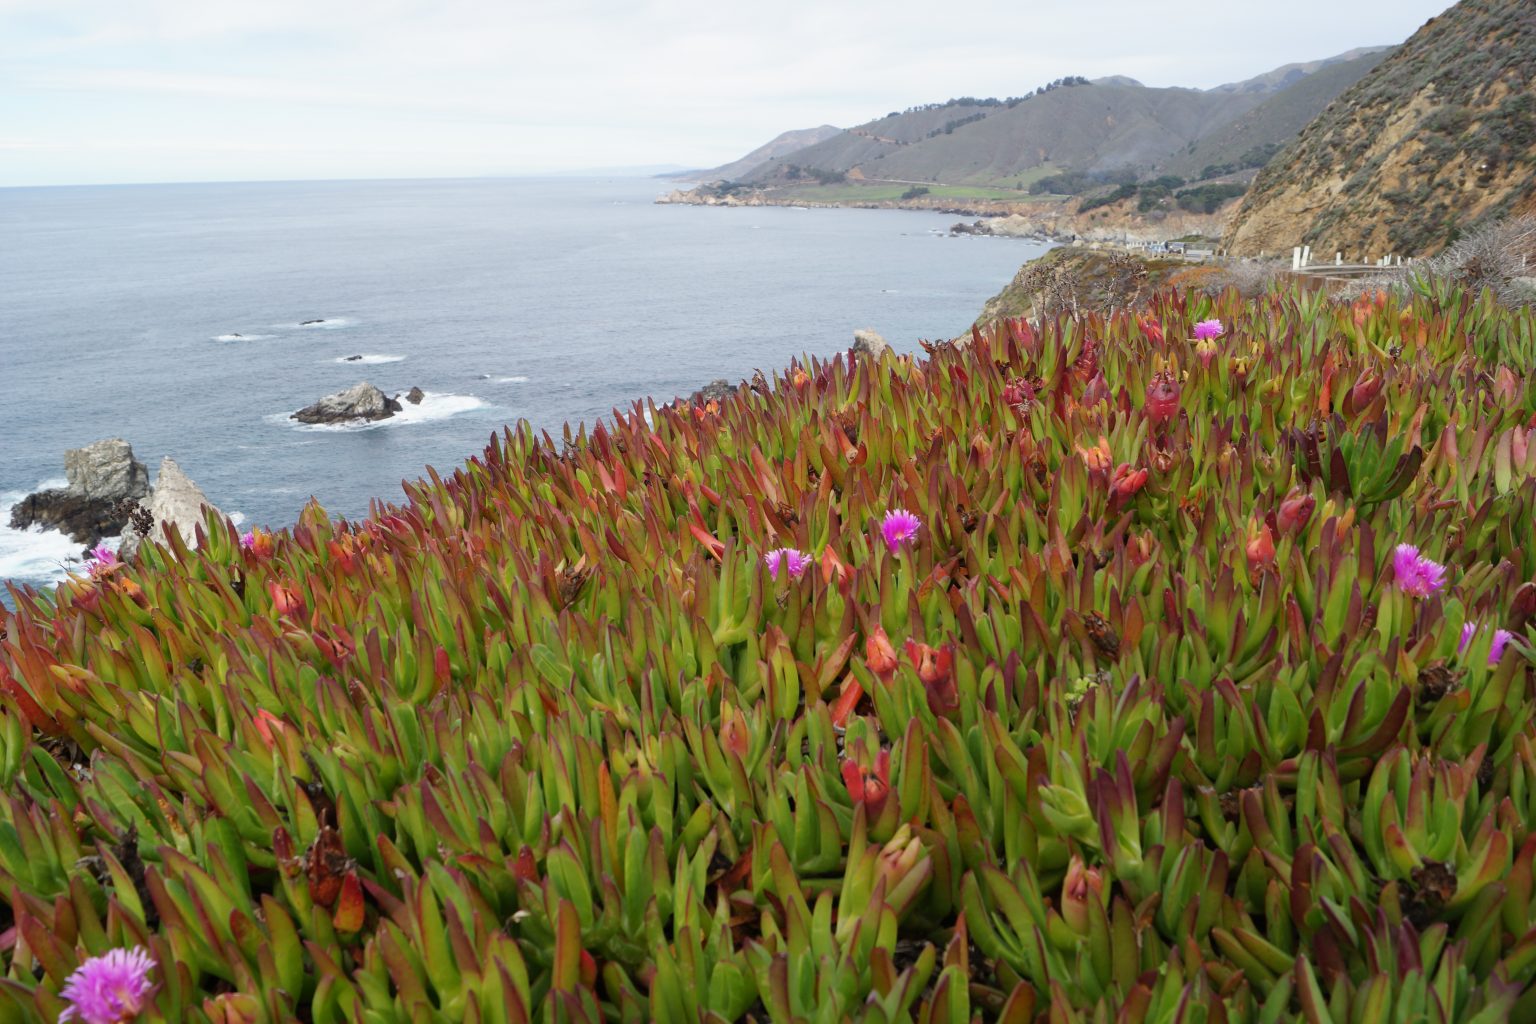 Capobrotus edulis flowers over the cliffs.